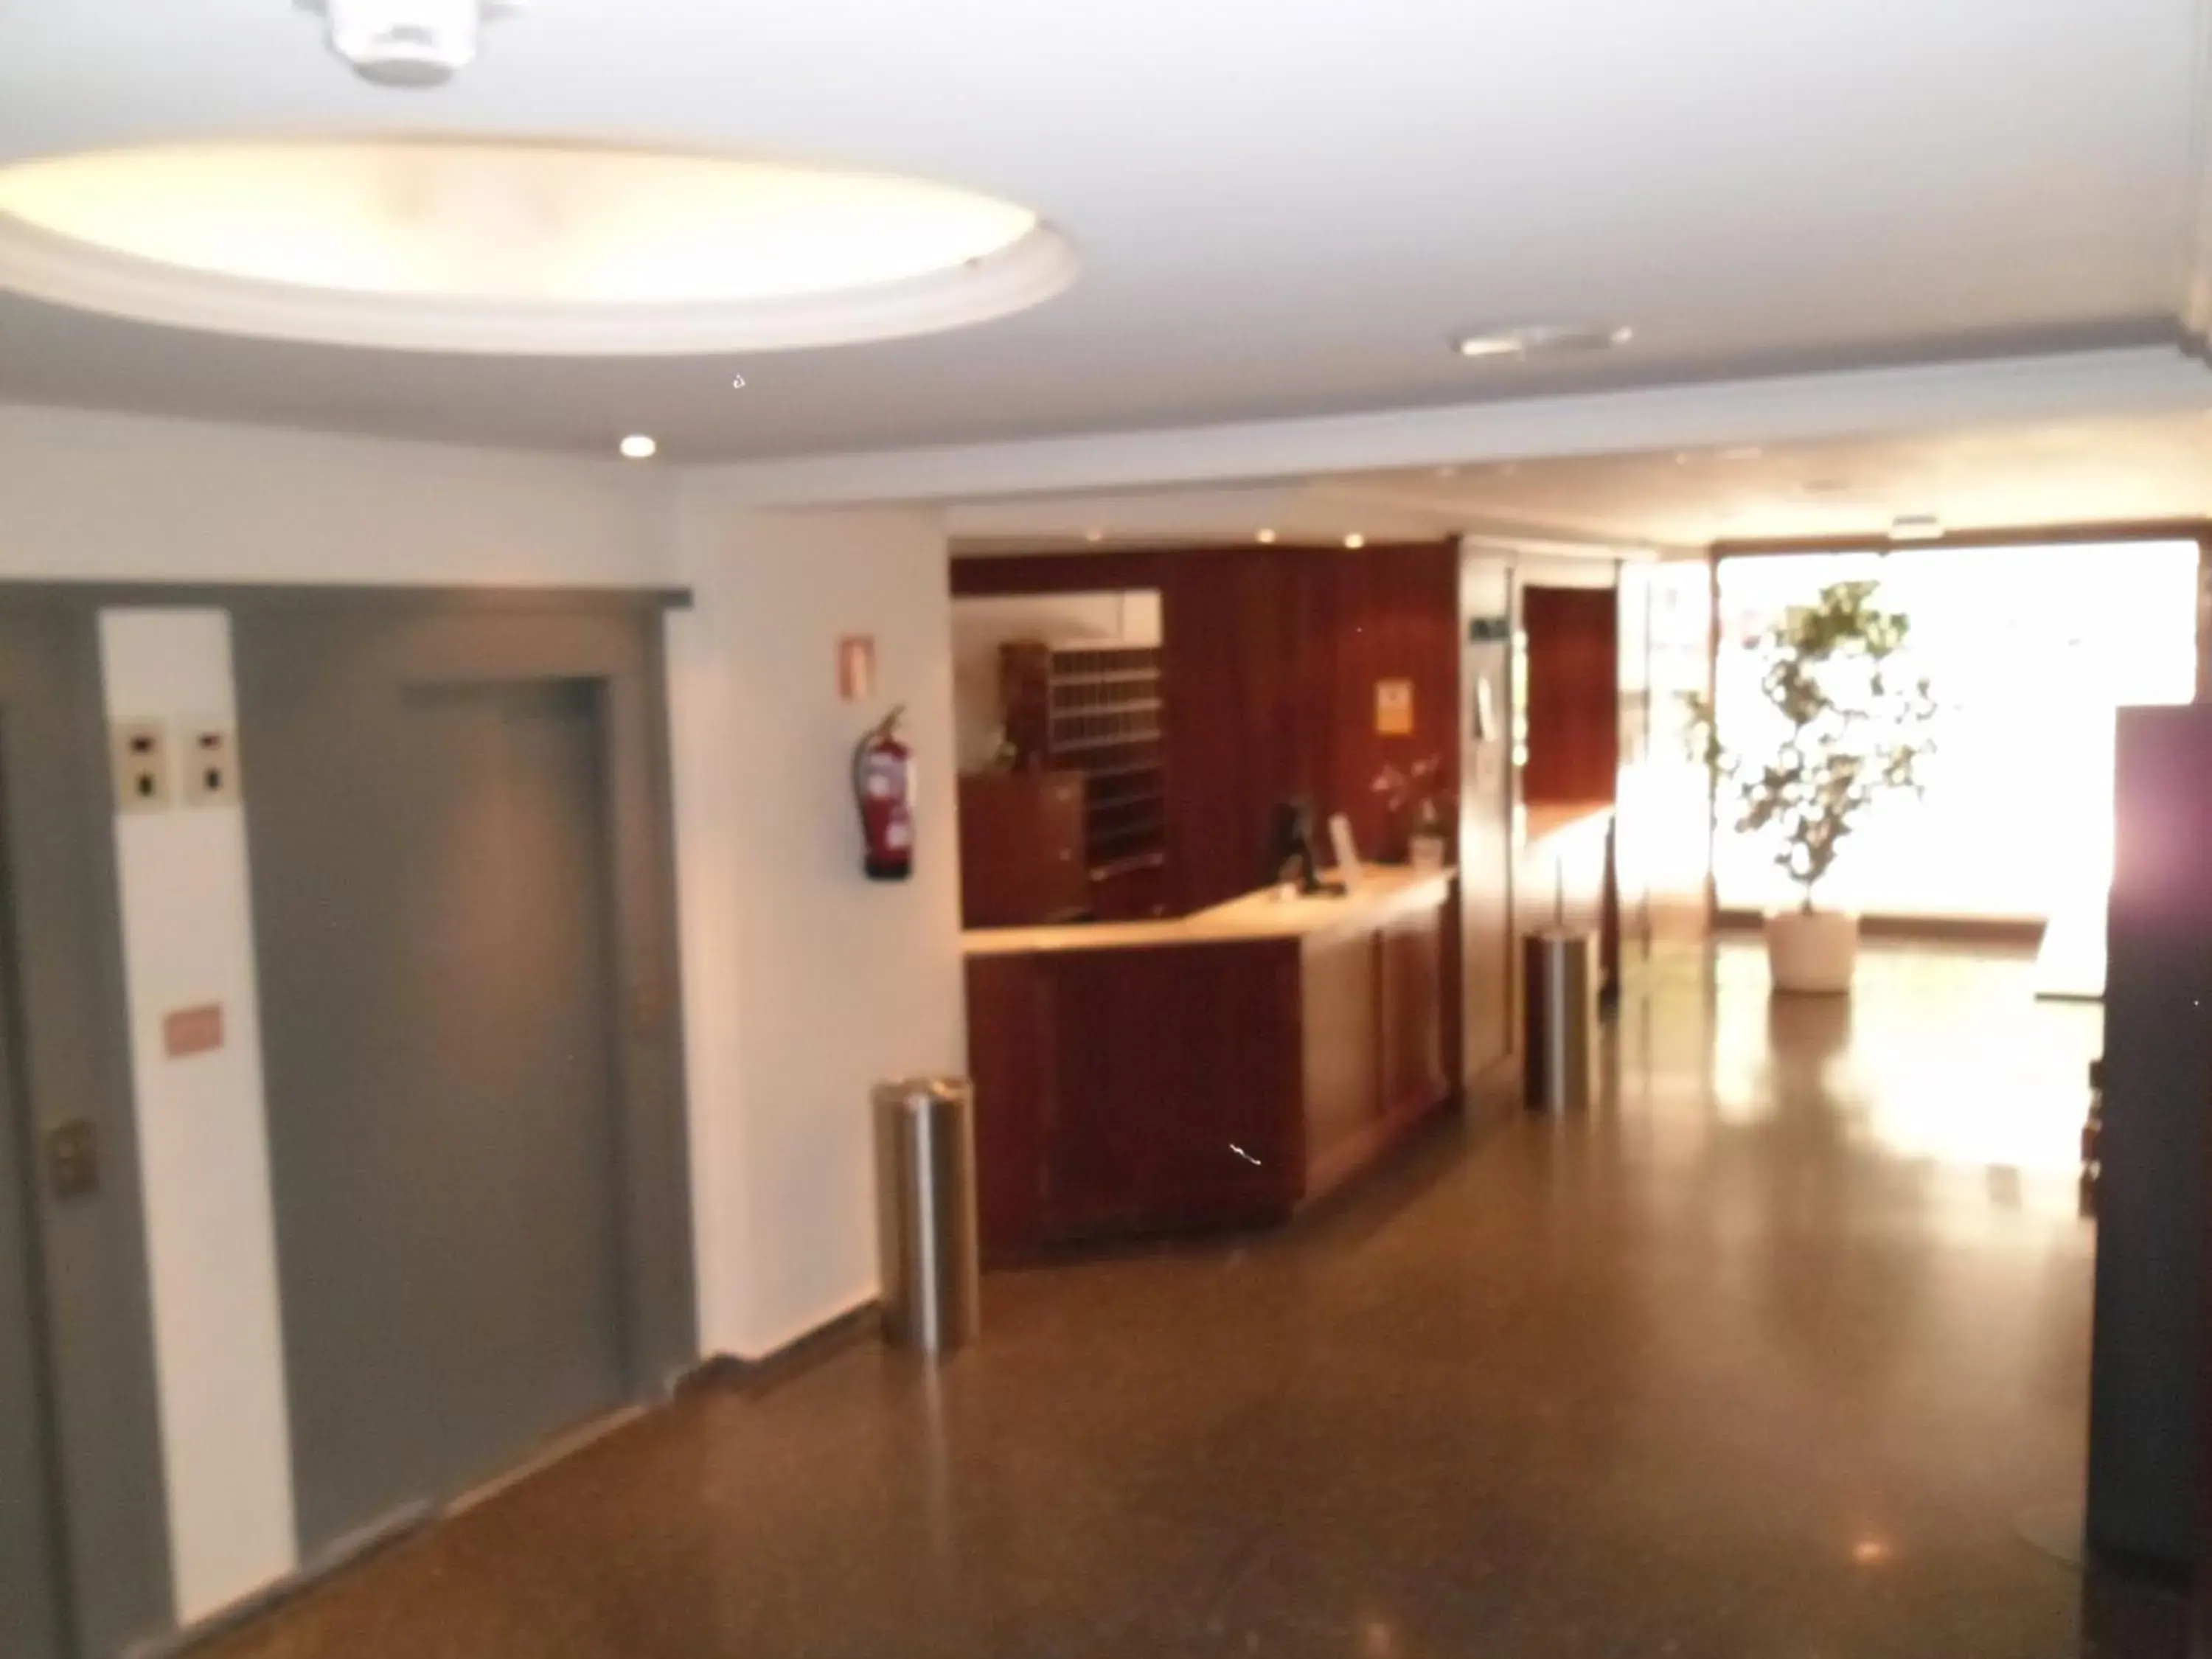 Lobby or reception, Lobby/Reception in Hotel Escuela Madrid